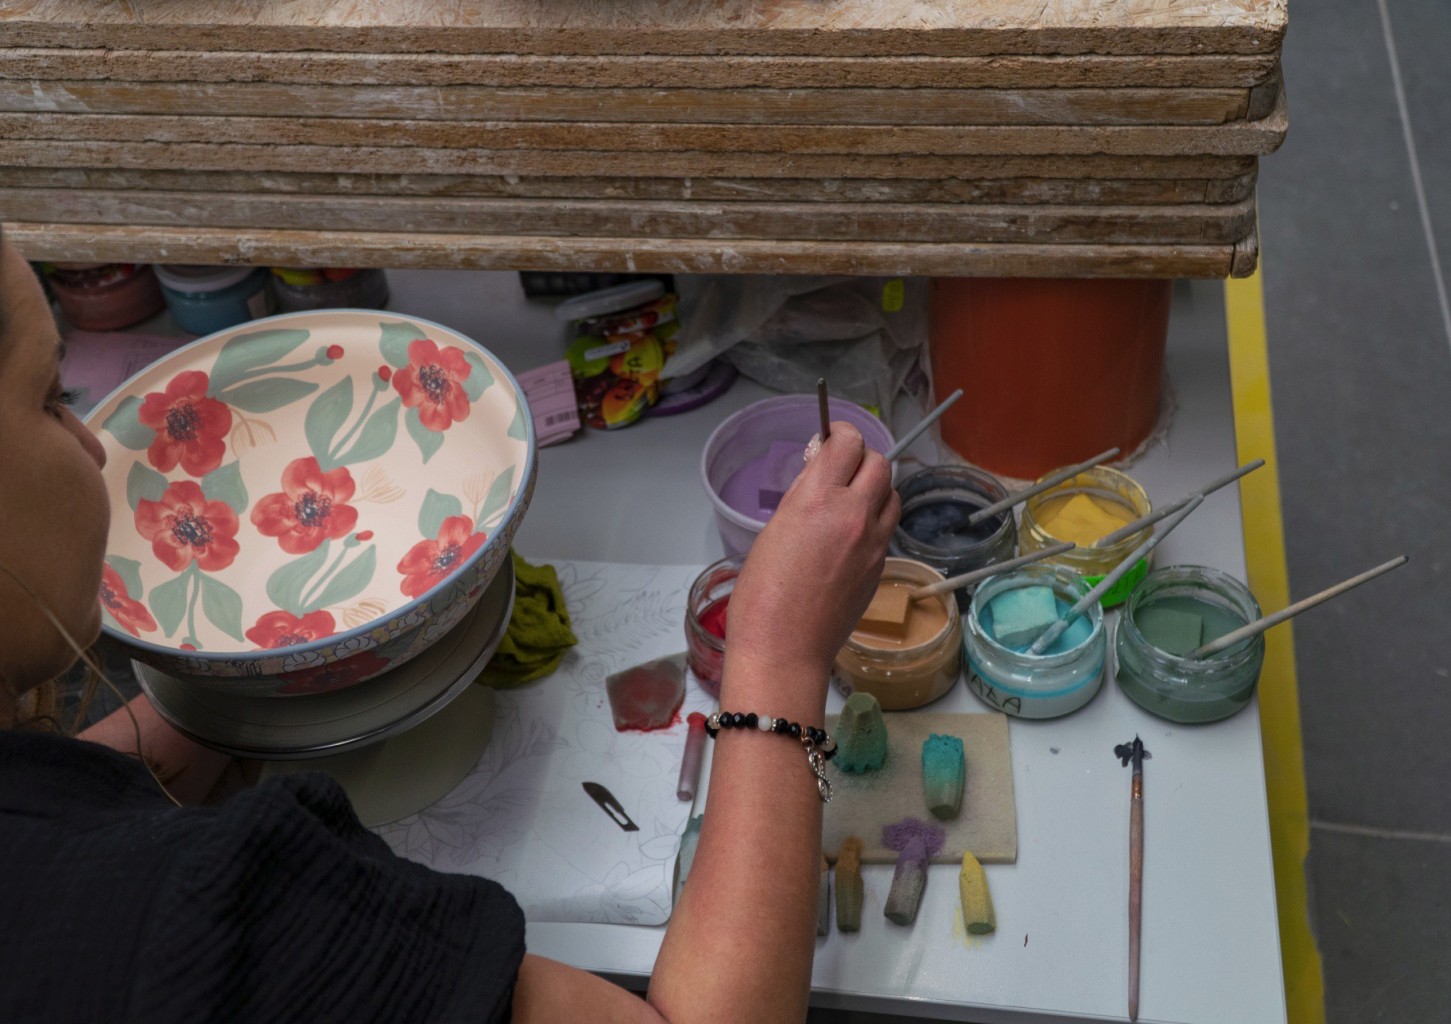 Warsztaty Zdobienia Ceramiki dla Dwojga | Bytom